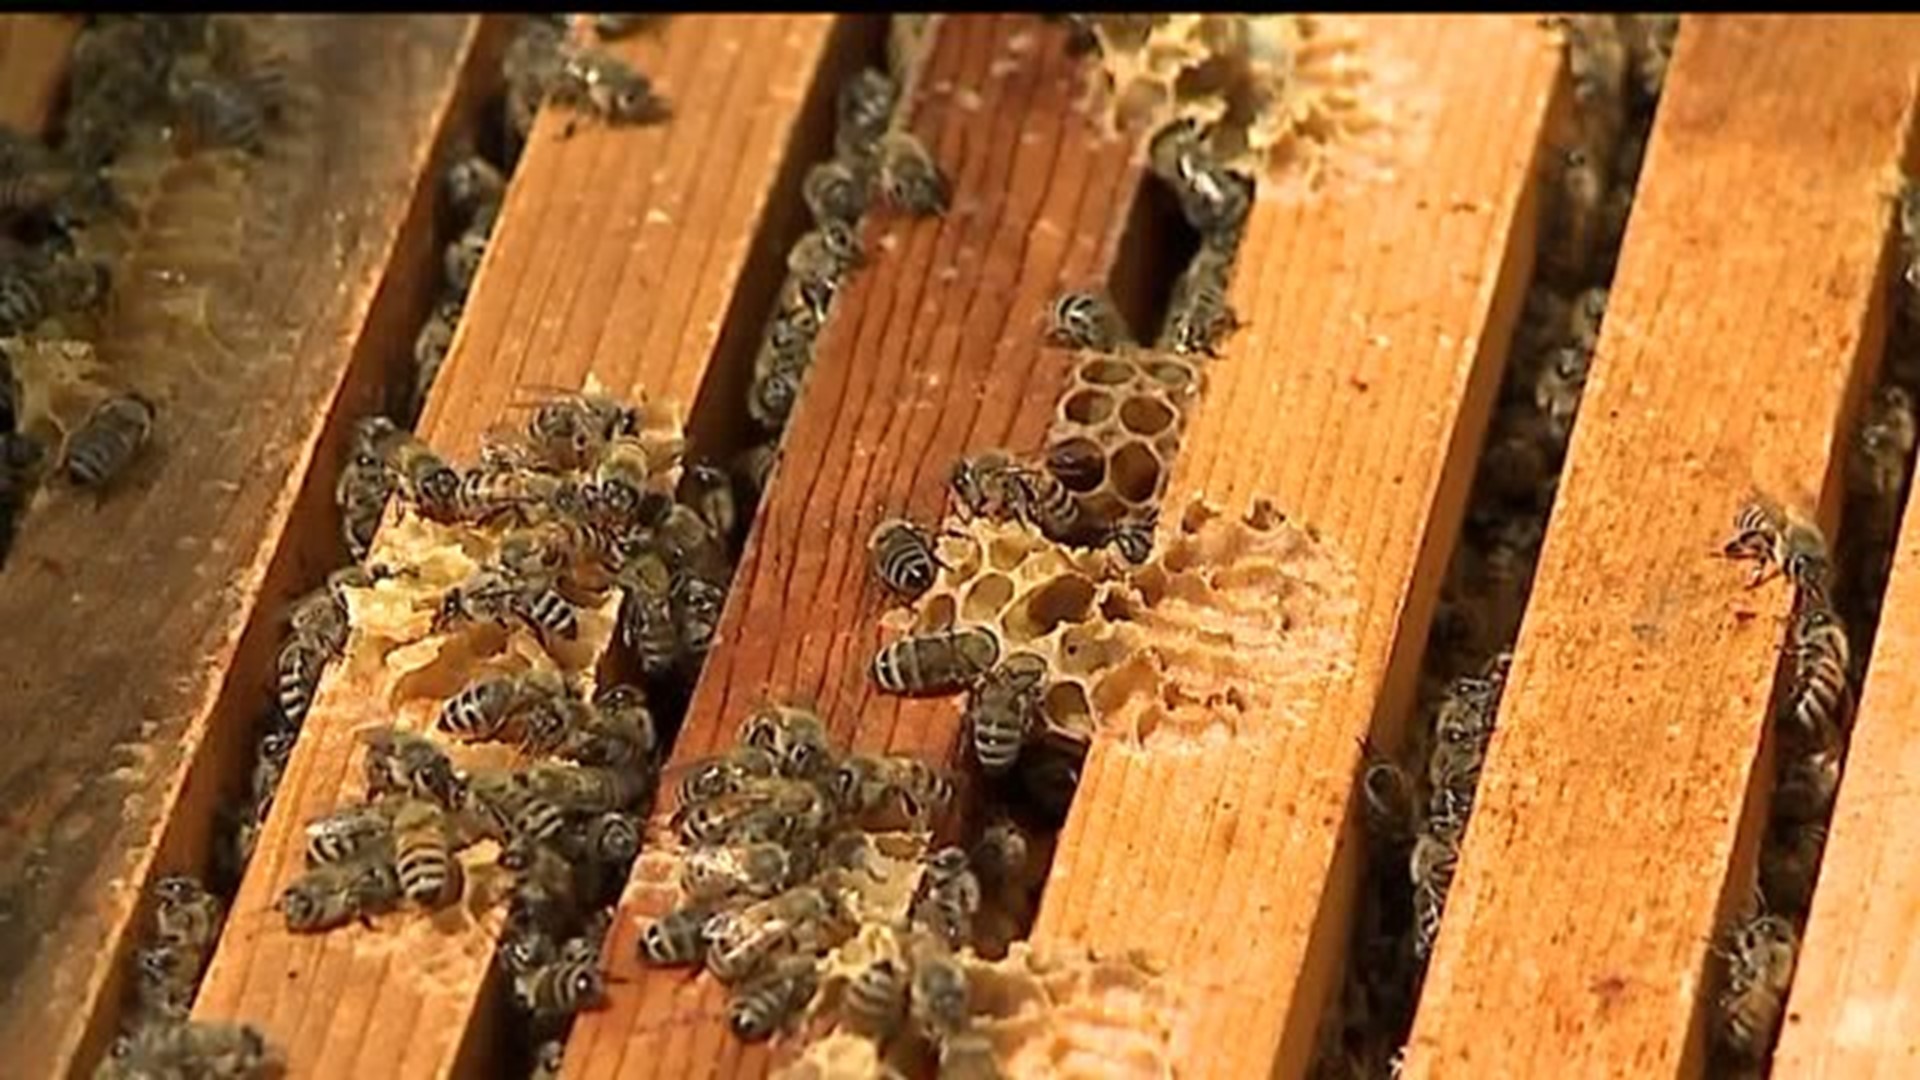 Millersville bee population